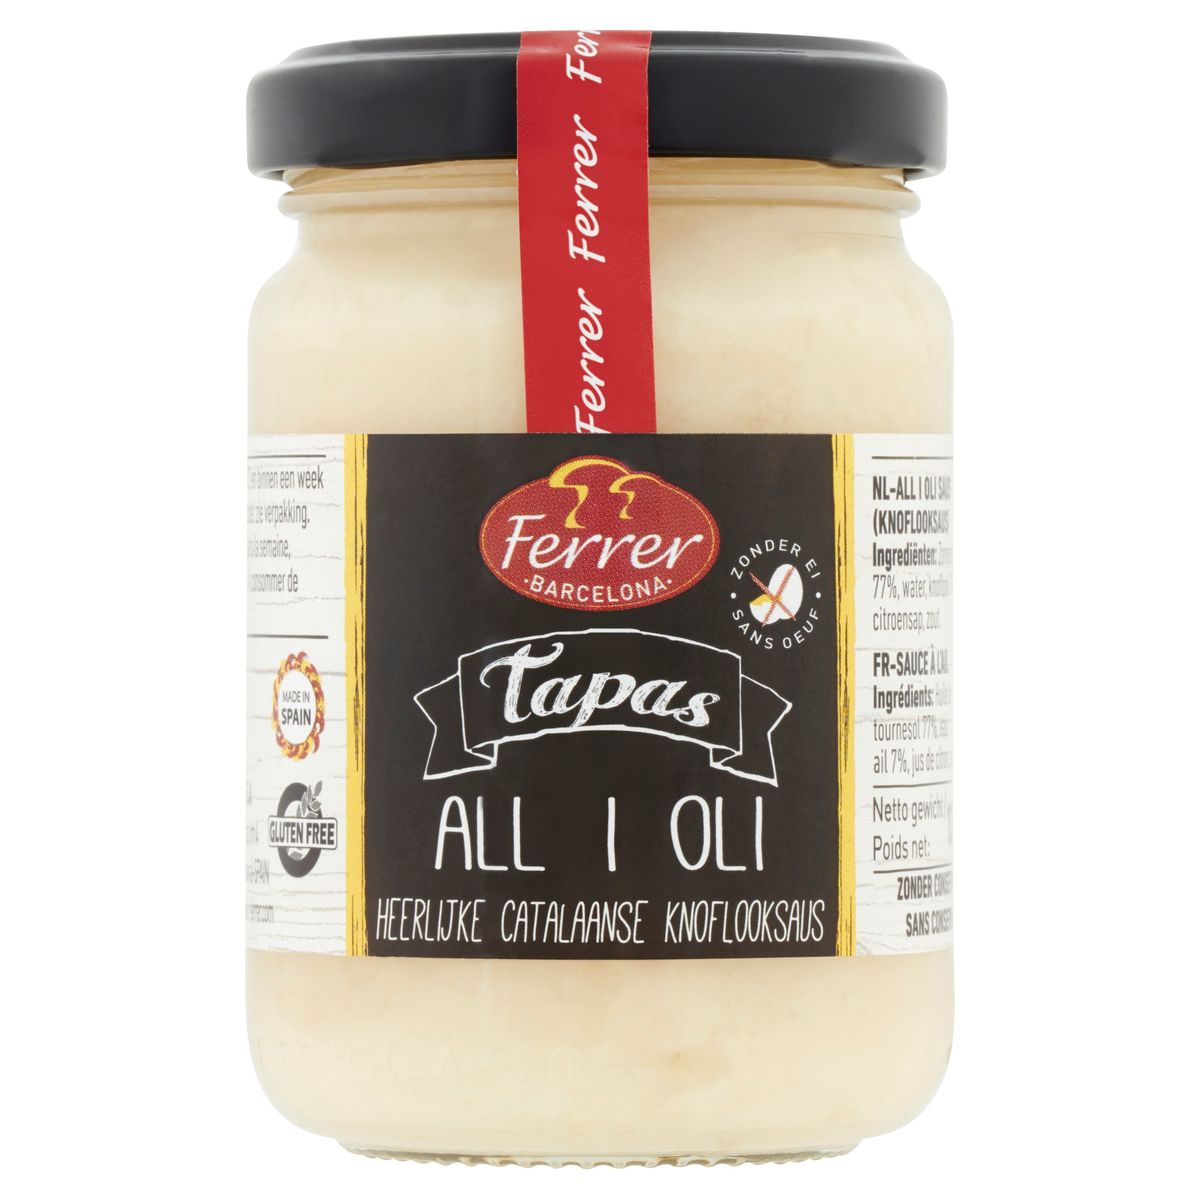 Ferrer Tapas All i Oli 130 g